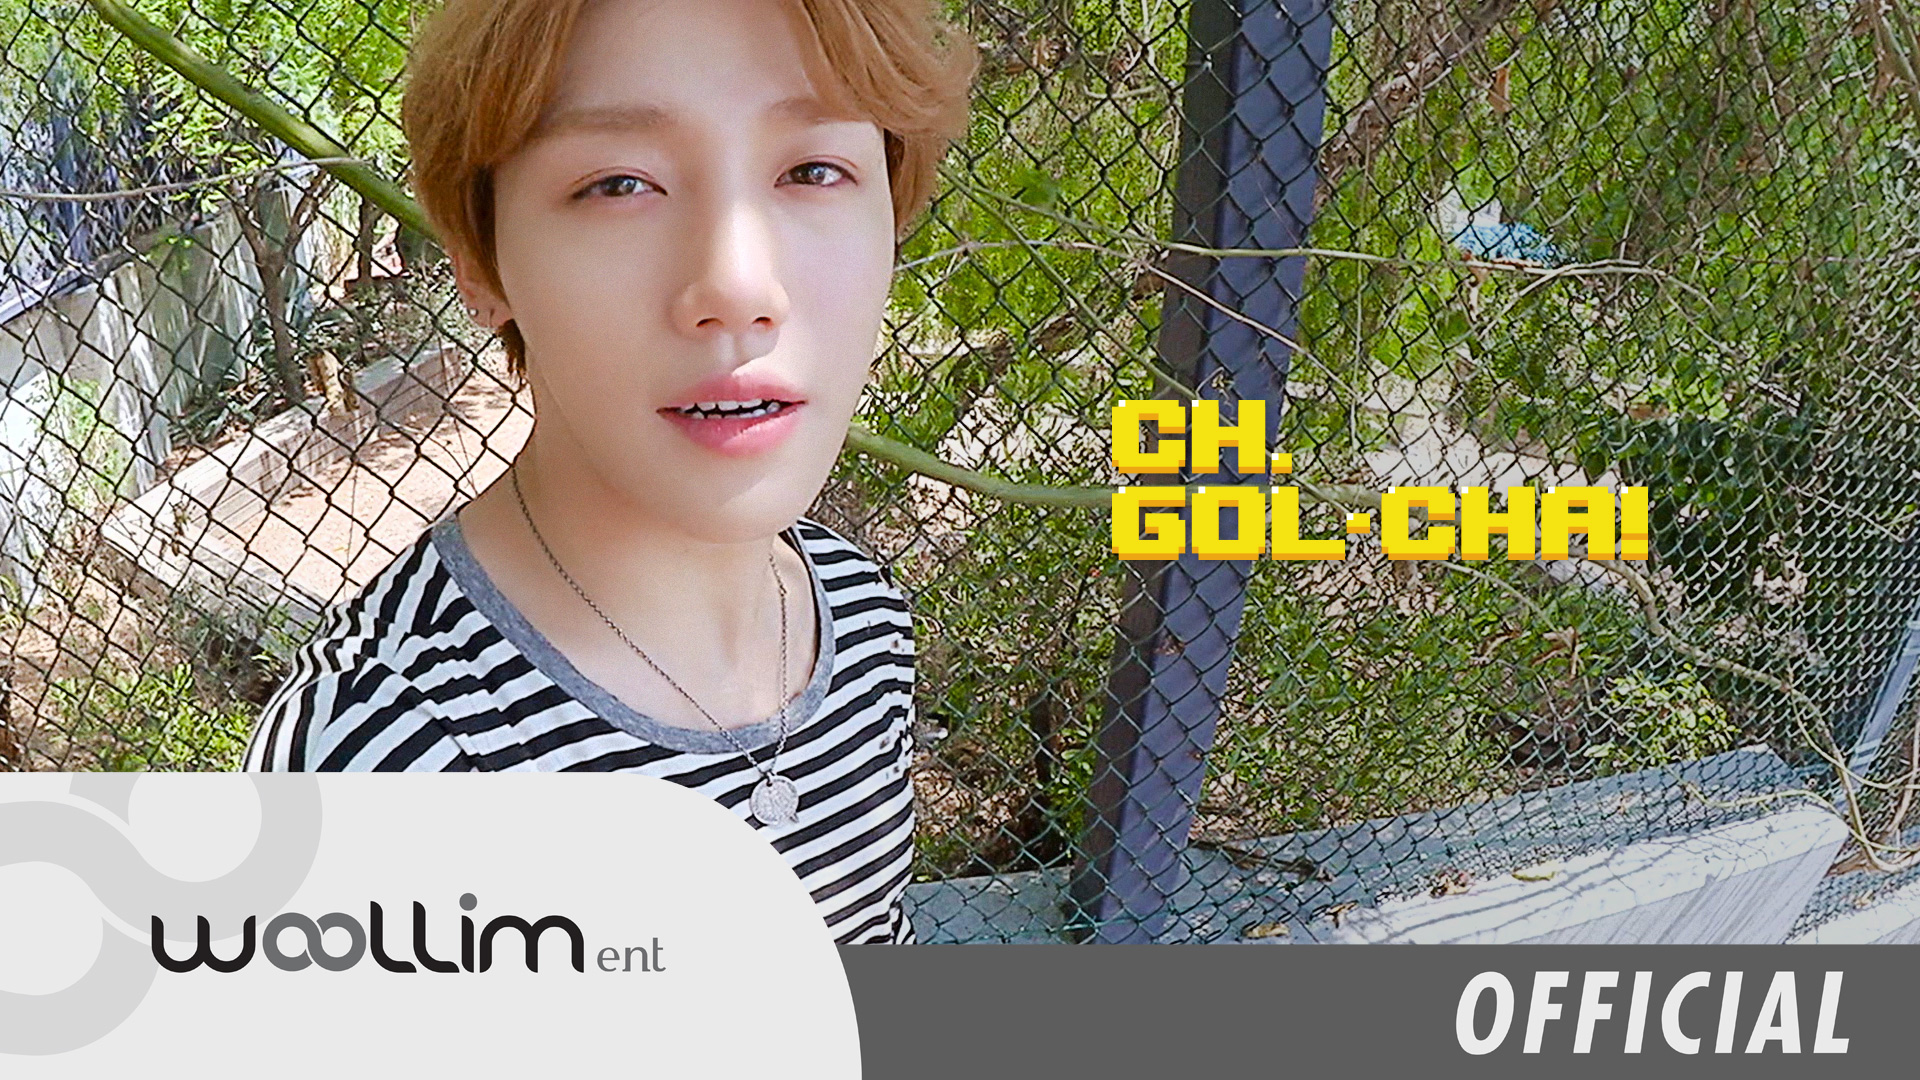 골든차일드(Golden Child) “CH.GOL-CHA!” Ep.3